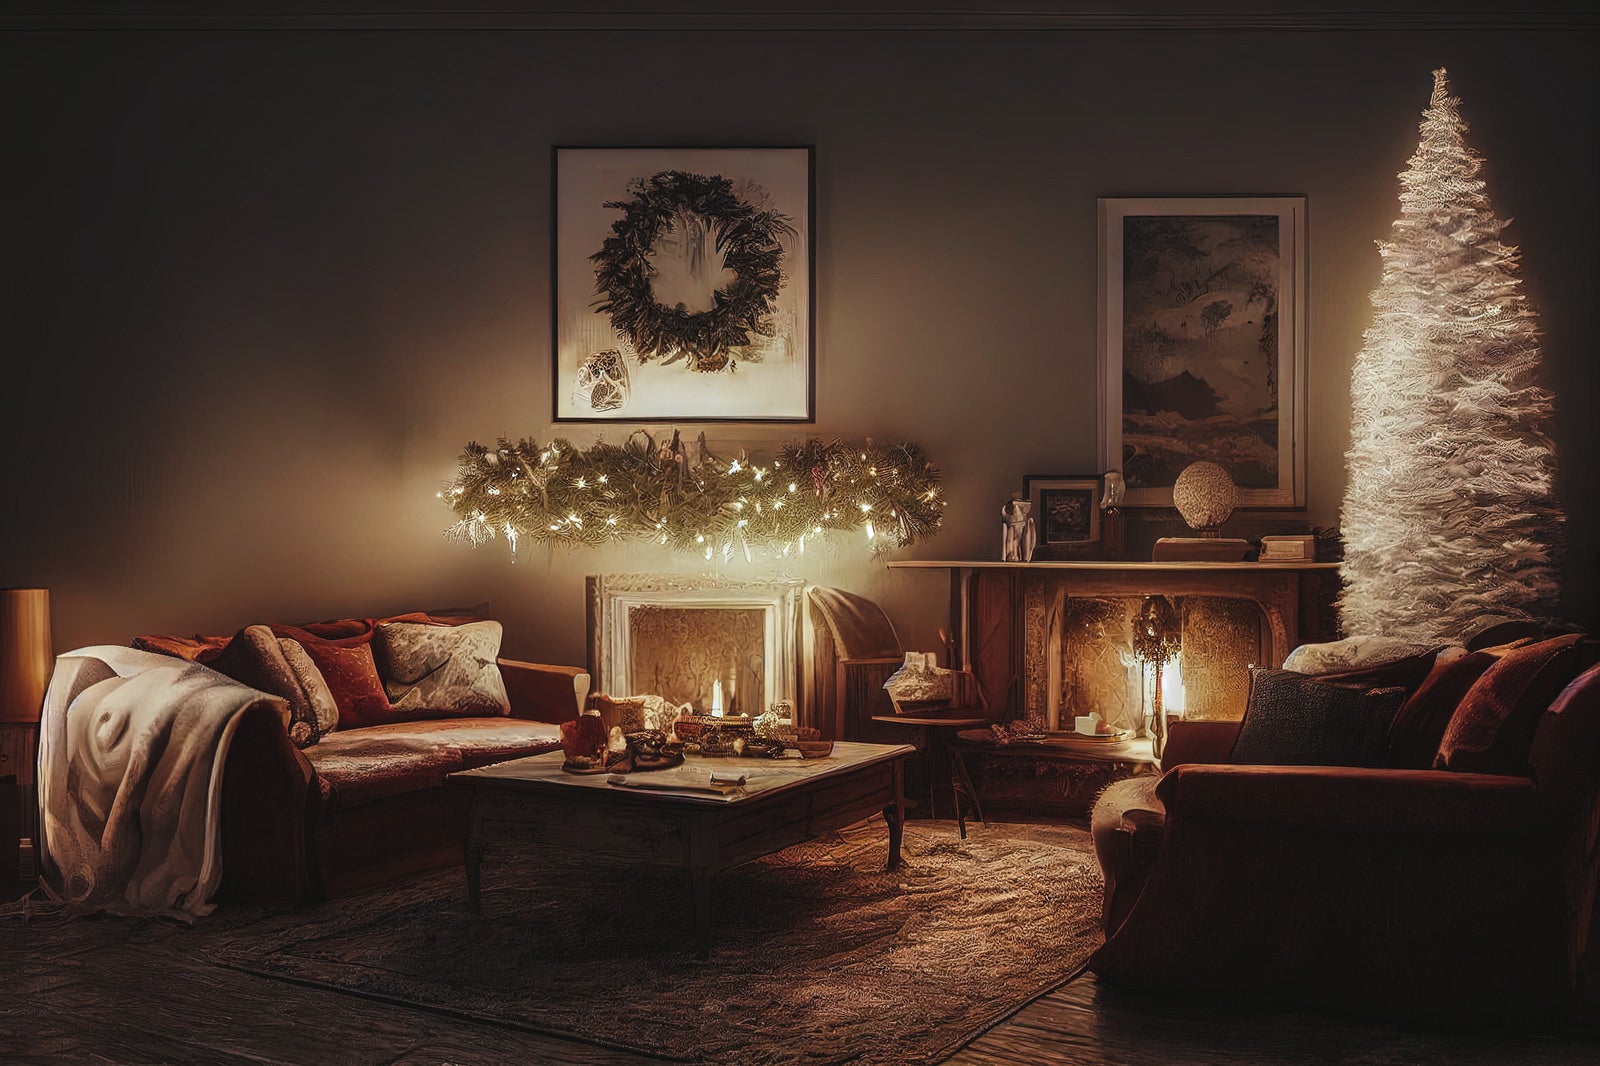 「ライトアップした薄暗い暖炉とクリスマスツリー」の写真